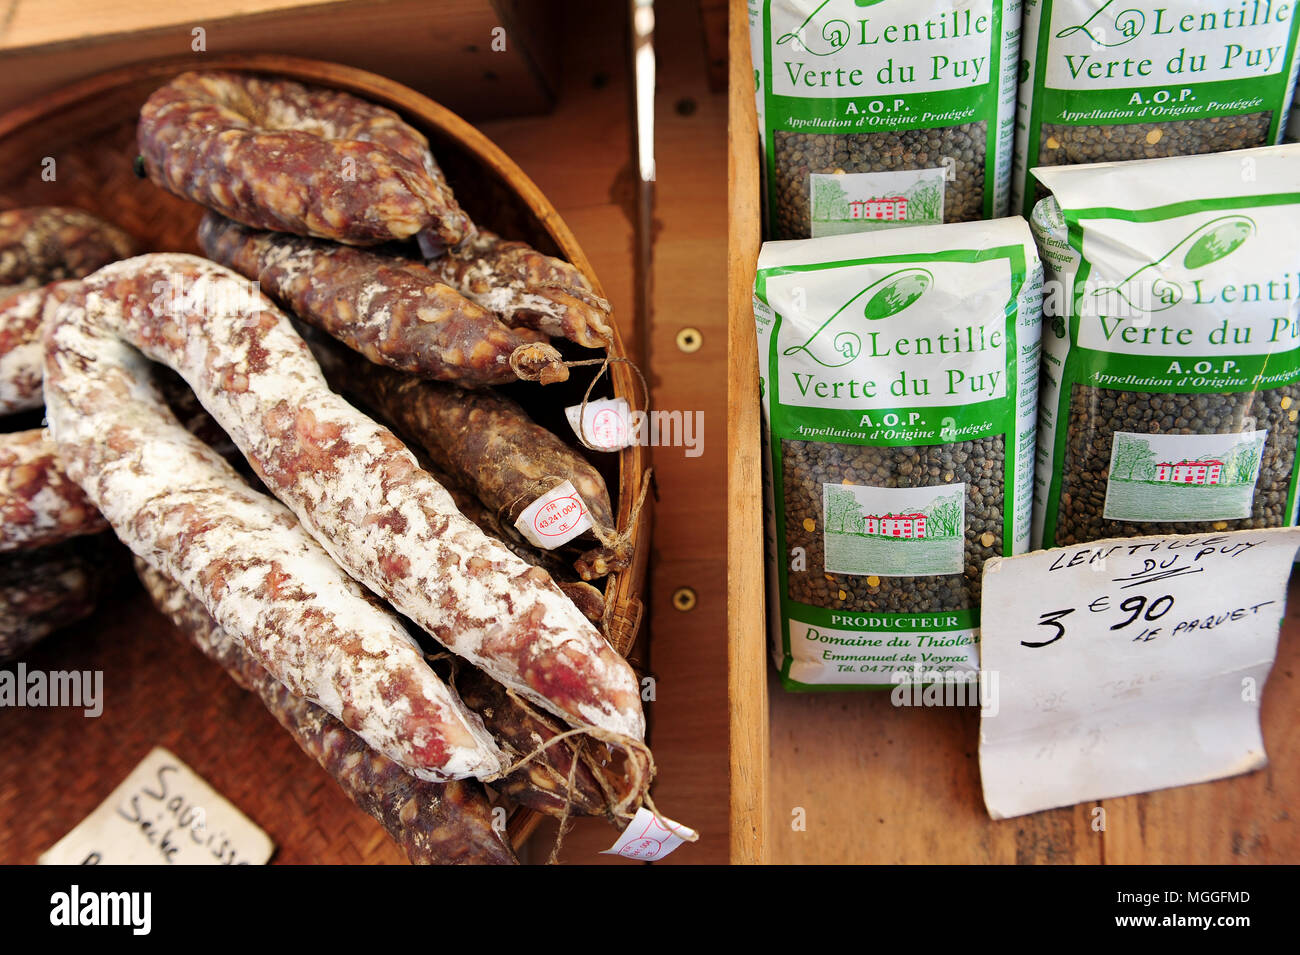 Sacchetti di Le Puy lenticchie verdi accanto ad alcuni prodotti localmente e salsicce presso il locale di frutta e verdura nel mercato della città di Le-Puy-en-Velay, Francia Foto Stock